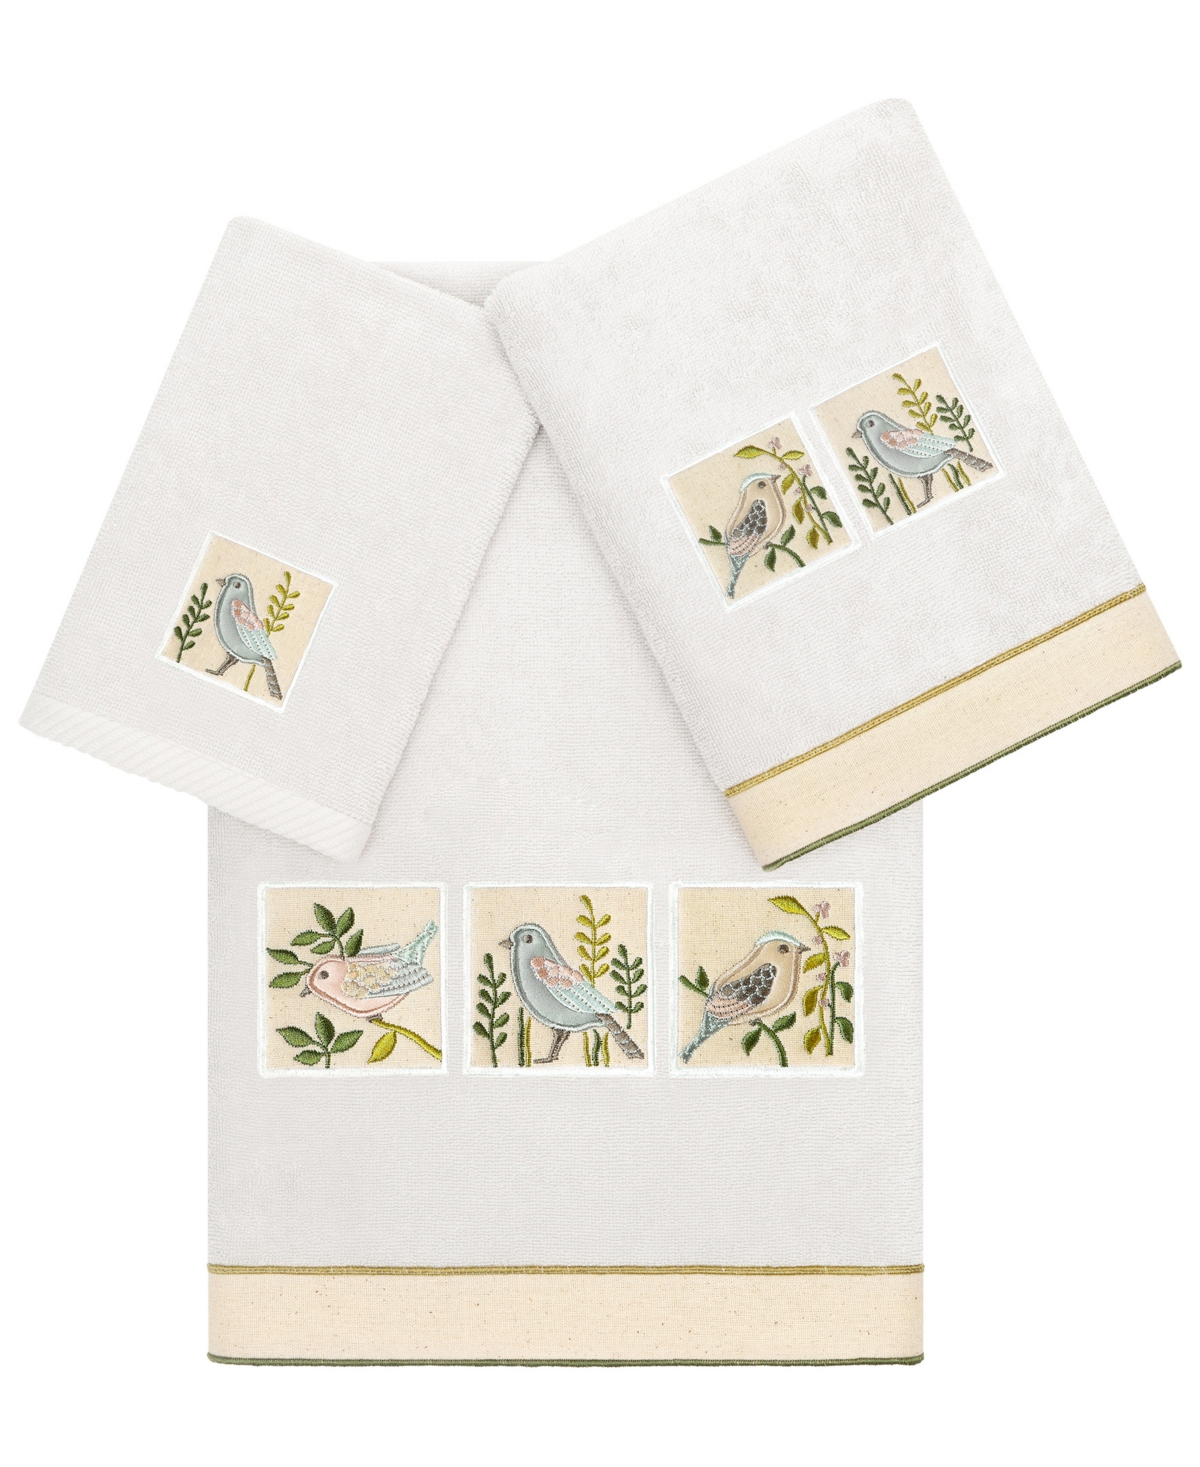 Linum Home Textiles Turkish Cotton Belinda Embellished Towel Set, 3 Piece Bedding In Silver